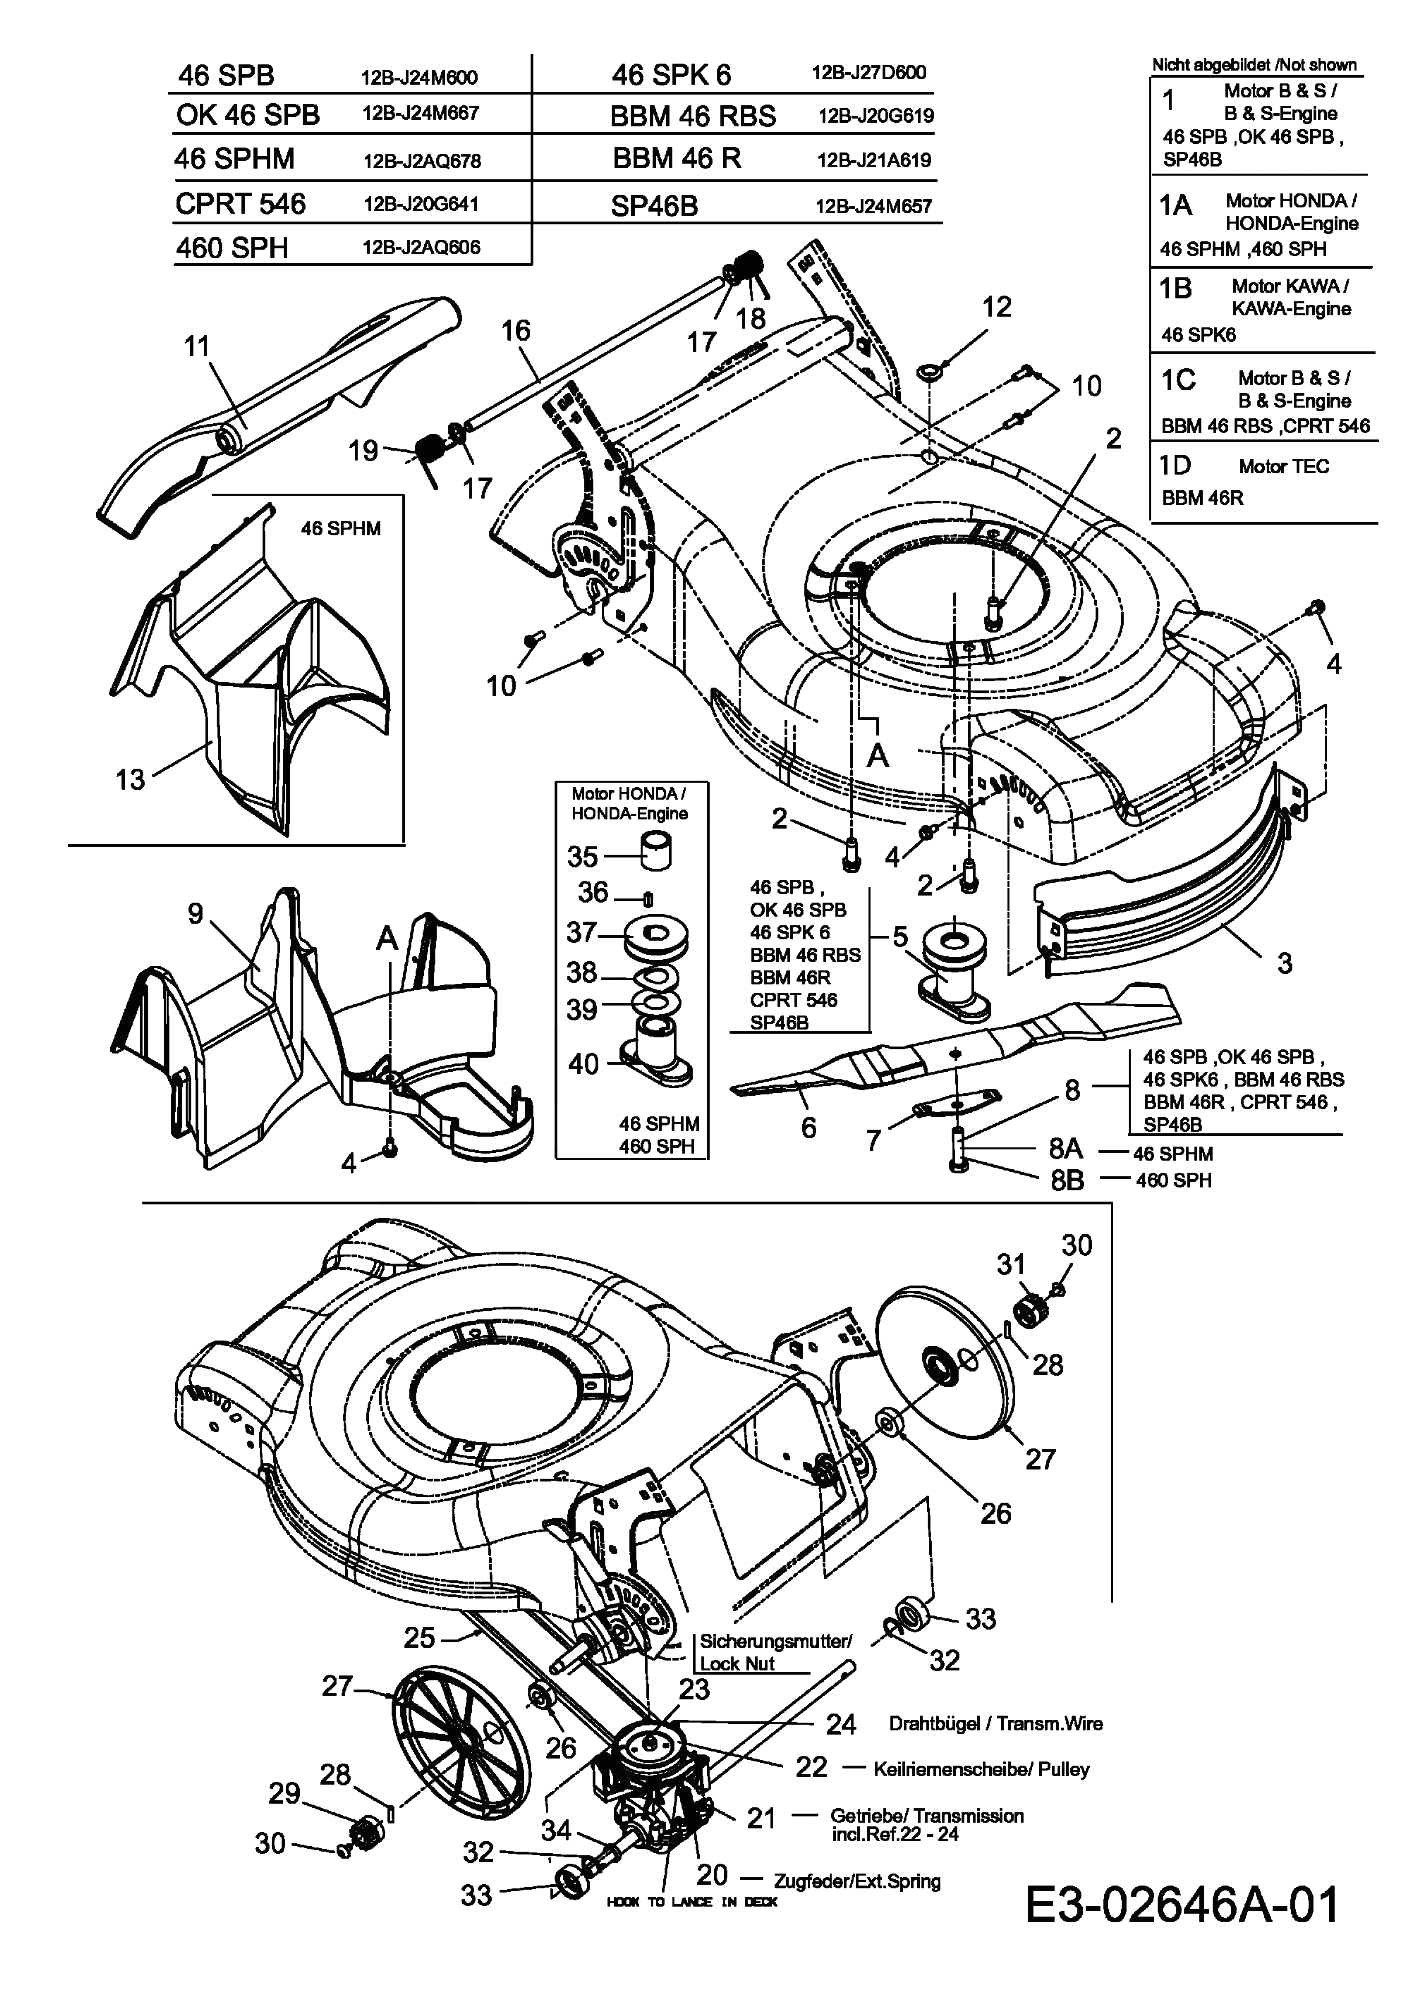 MTD Артикул 12B-J2AQ678 (год выпуска 2006). Коробка передач, нож, двигатель, мульчирование